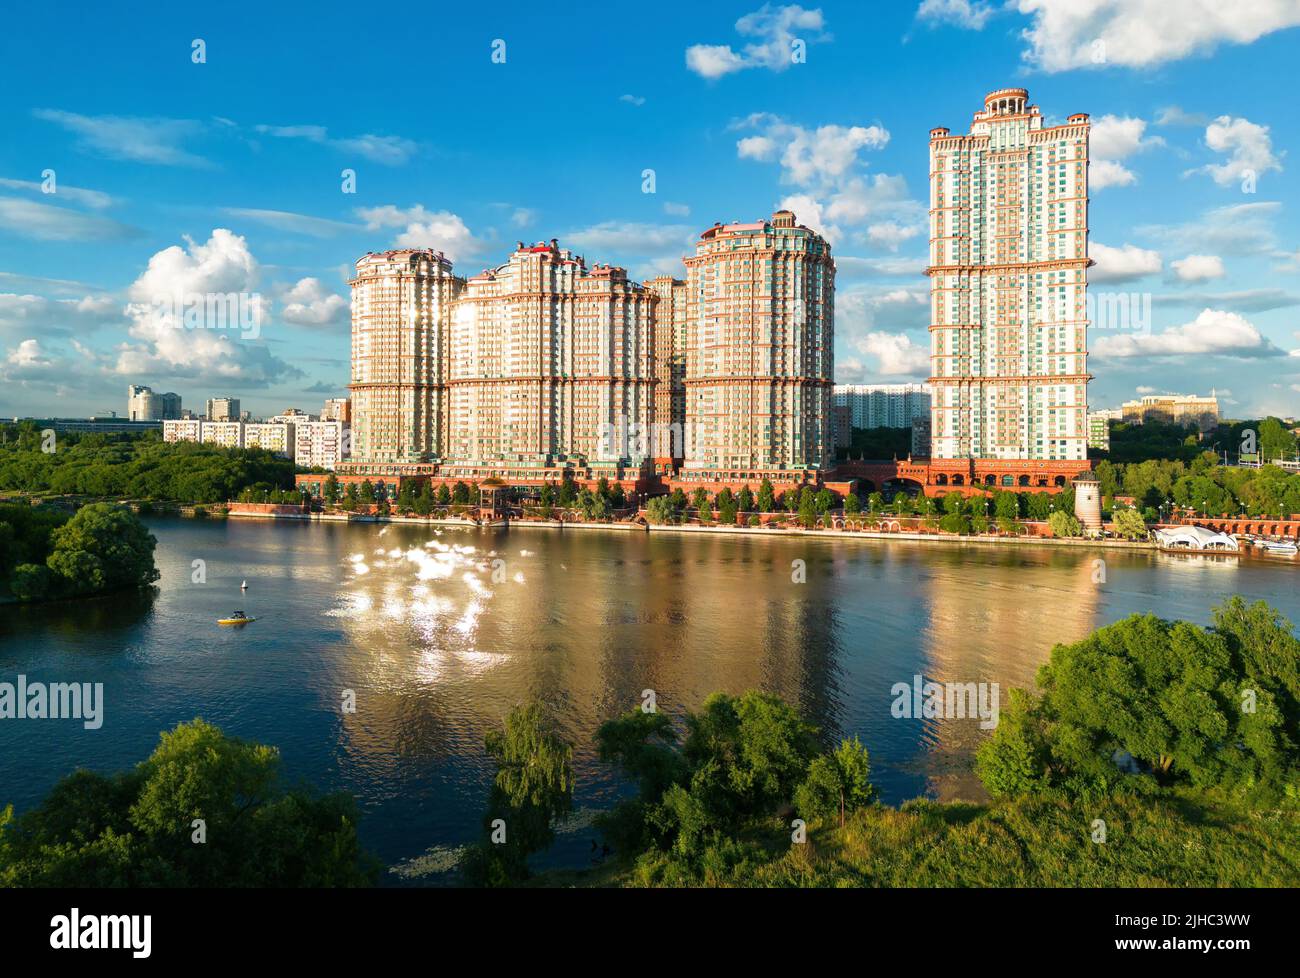 Complejo residencial Alye Parusa en el río Moskva, Moscú, Rusia. Vista aérea panorámica de los altos edificios vivos de la ciudad de Moscú al noroeste. Paisaje de Moscú r Foto de stock